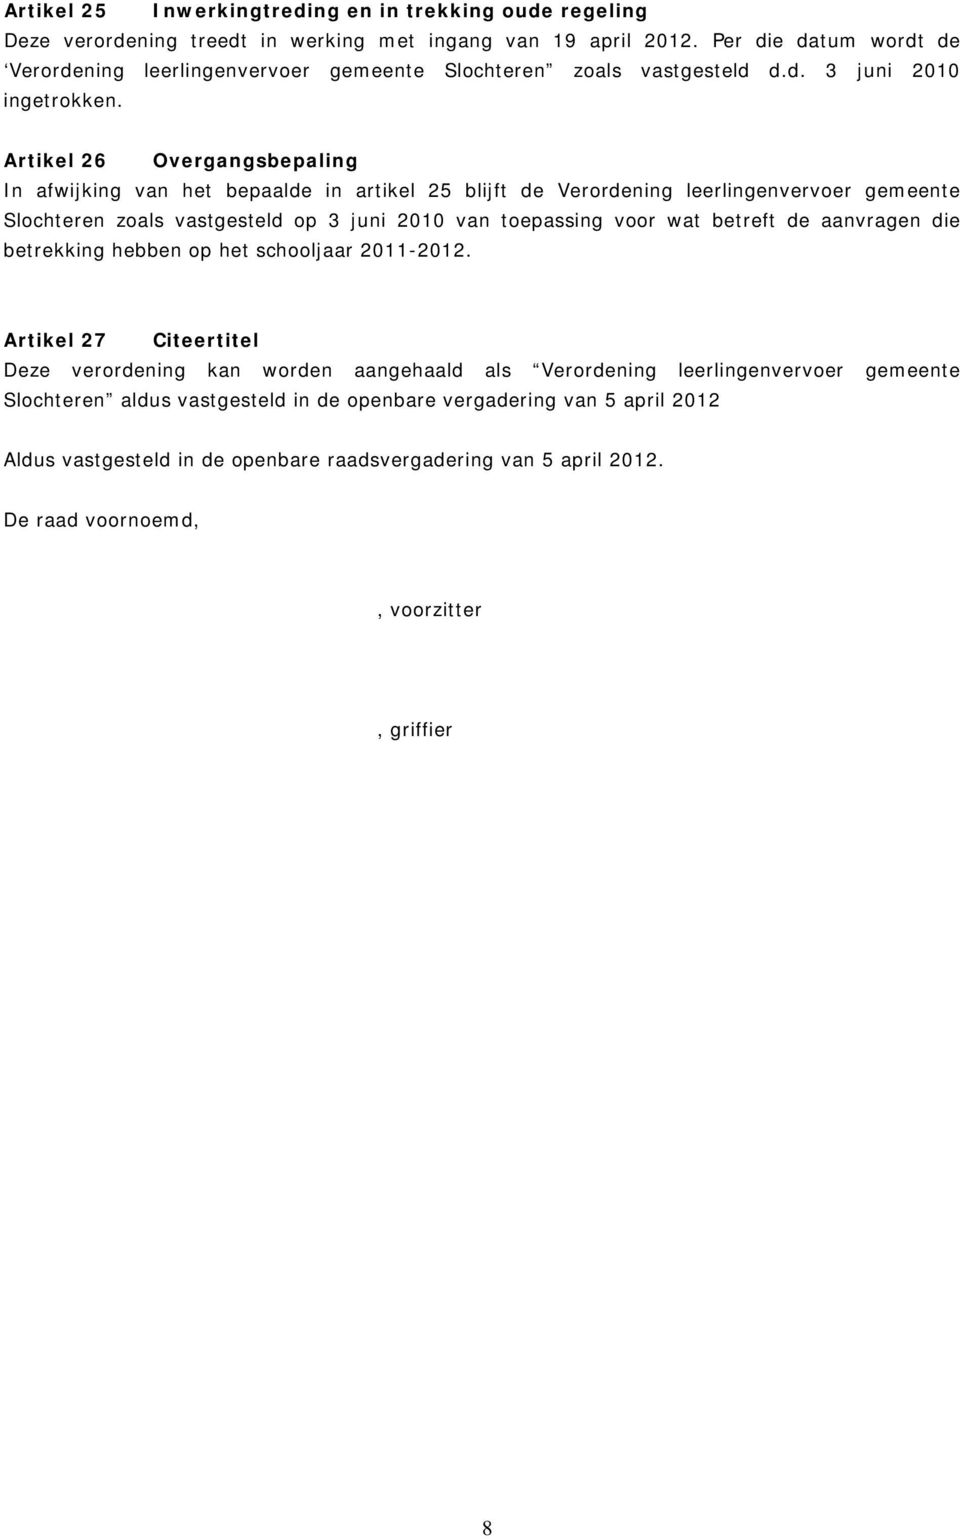 Artikel 26 Overgangsbepaling In afwijking van het bepaalde in artikel 25 blijft de Verordening leerlingenvervoer gemeente Slochteren zoals vastgesteld op 3 juni 2010 van toepassing voor wat betreft